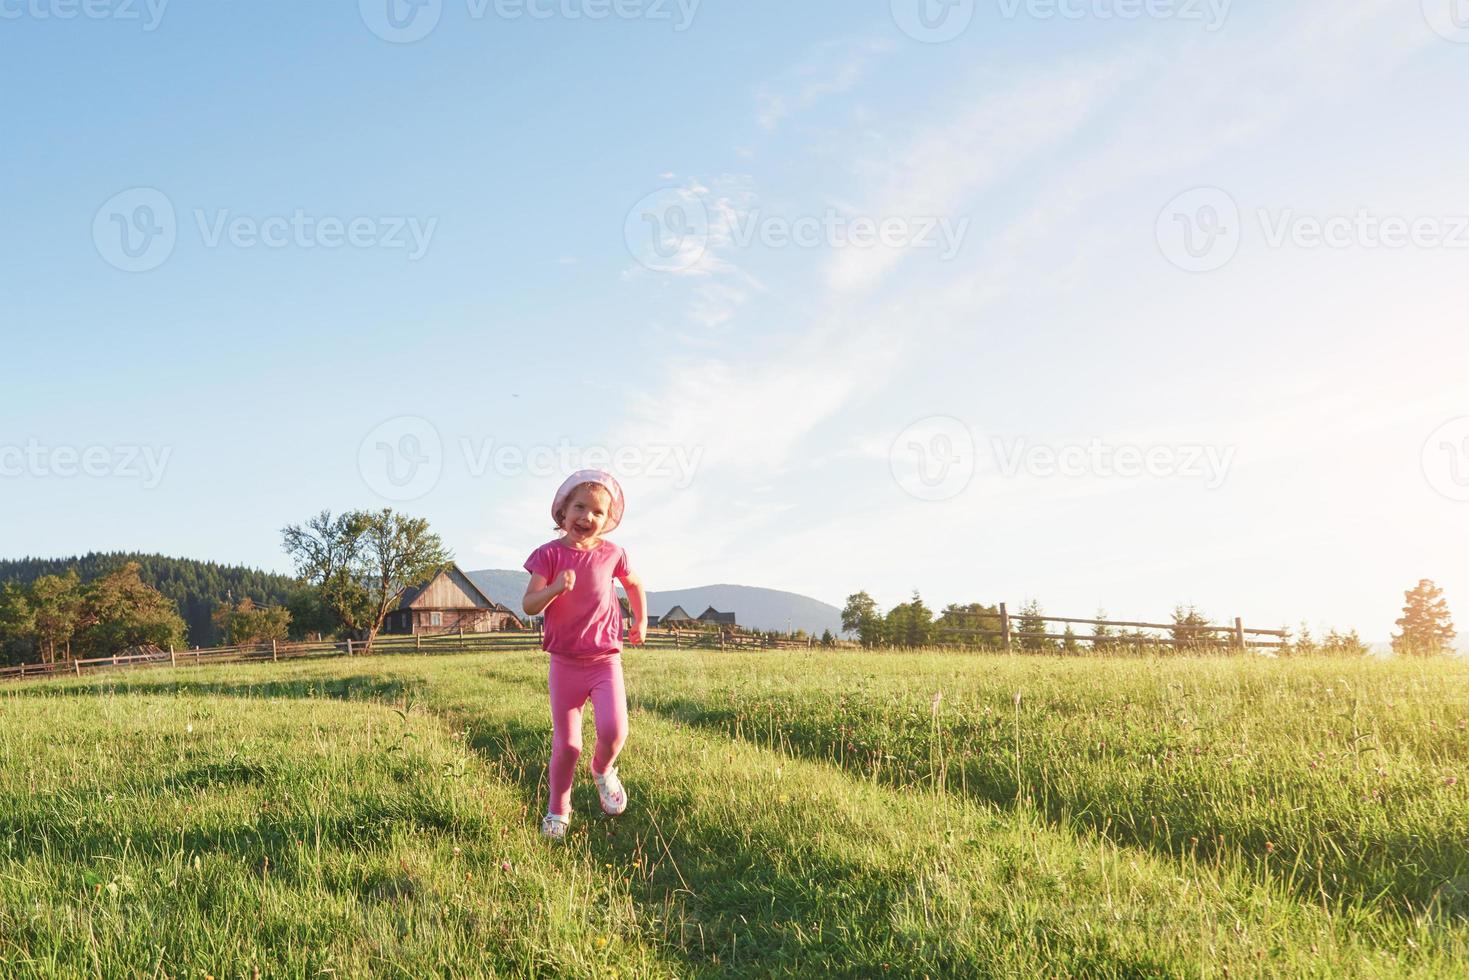 jolie petite fille heureuse joue dehors tôt le matin dans la pelouse et admire la vue sur les montagnes. copiez l'espace pour votre texte photo